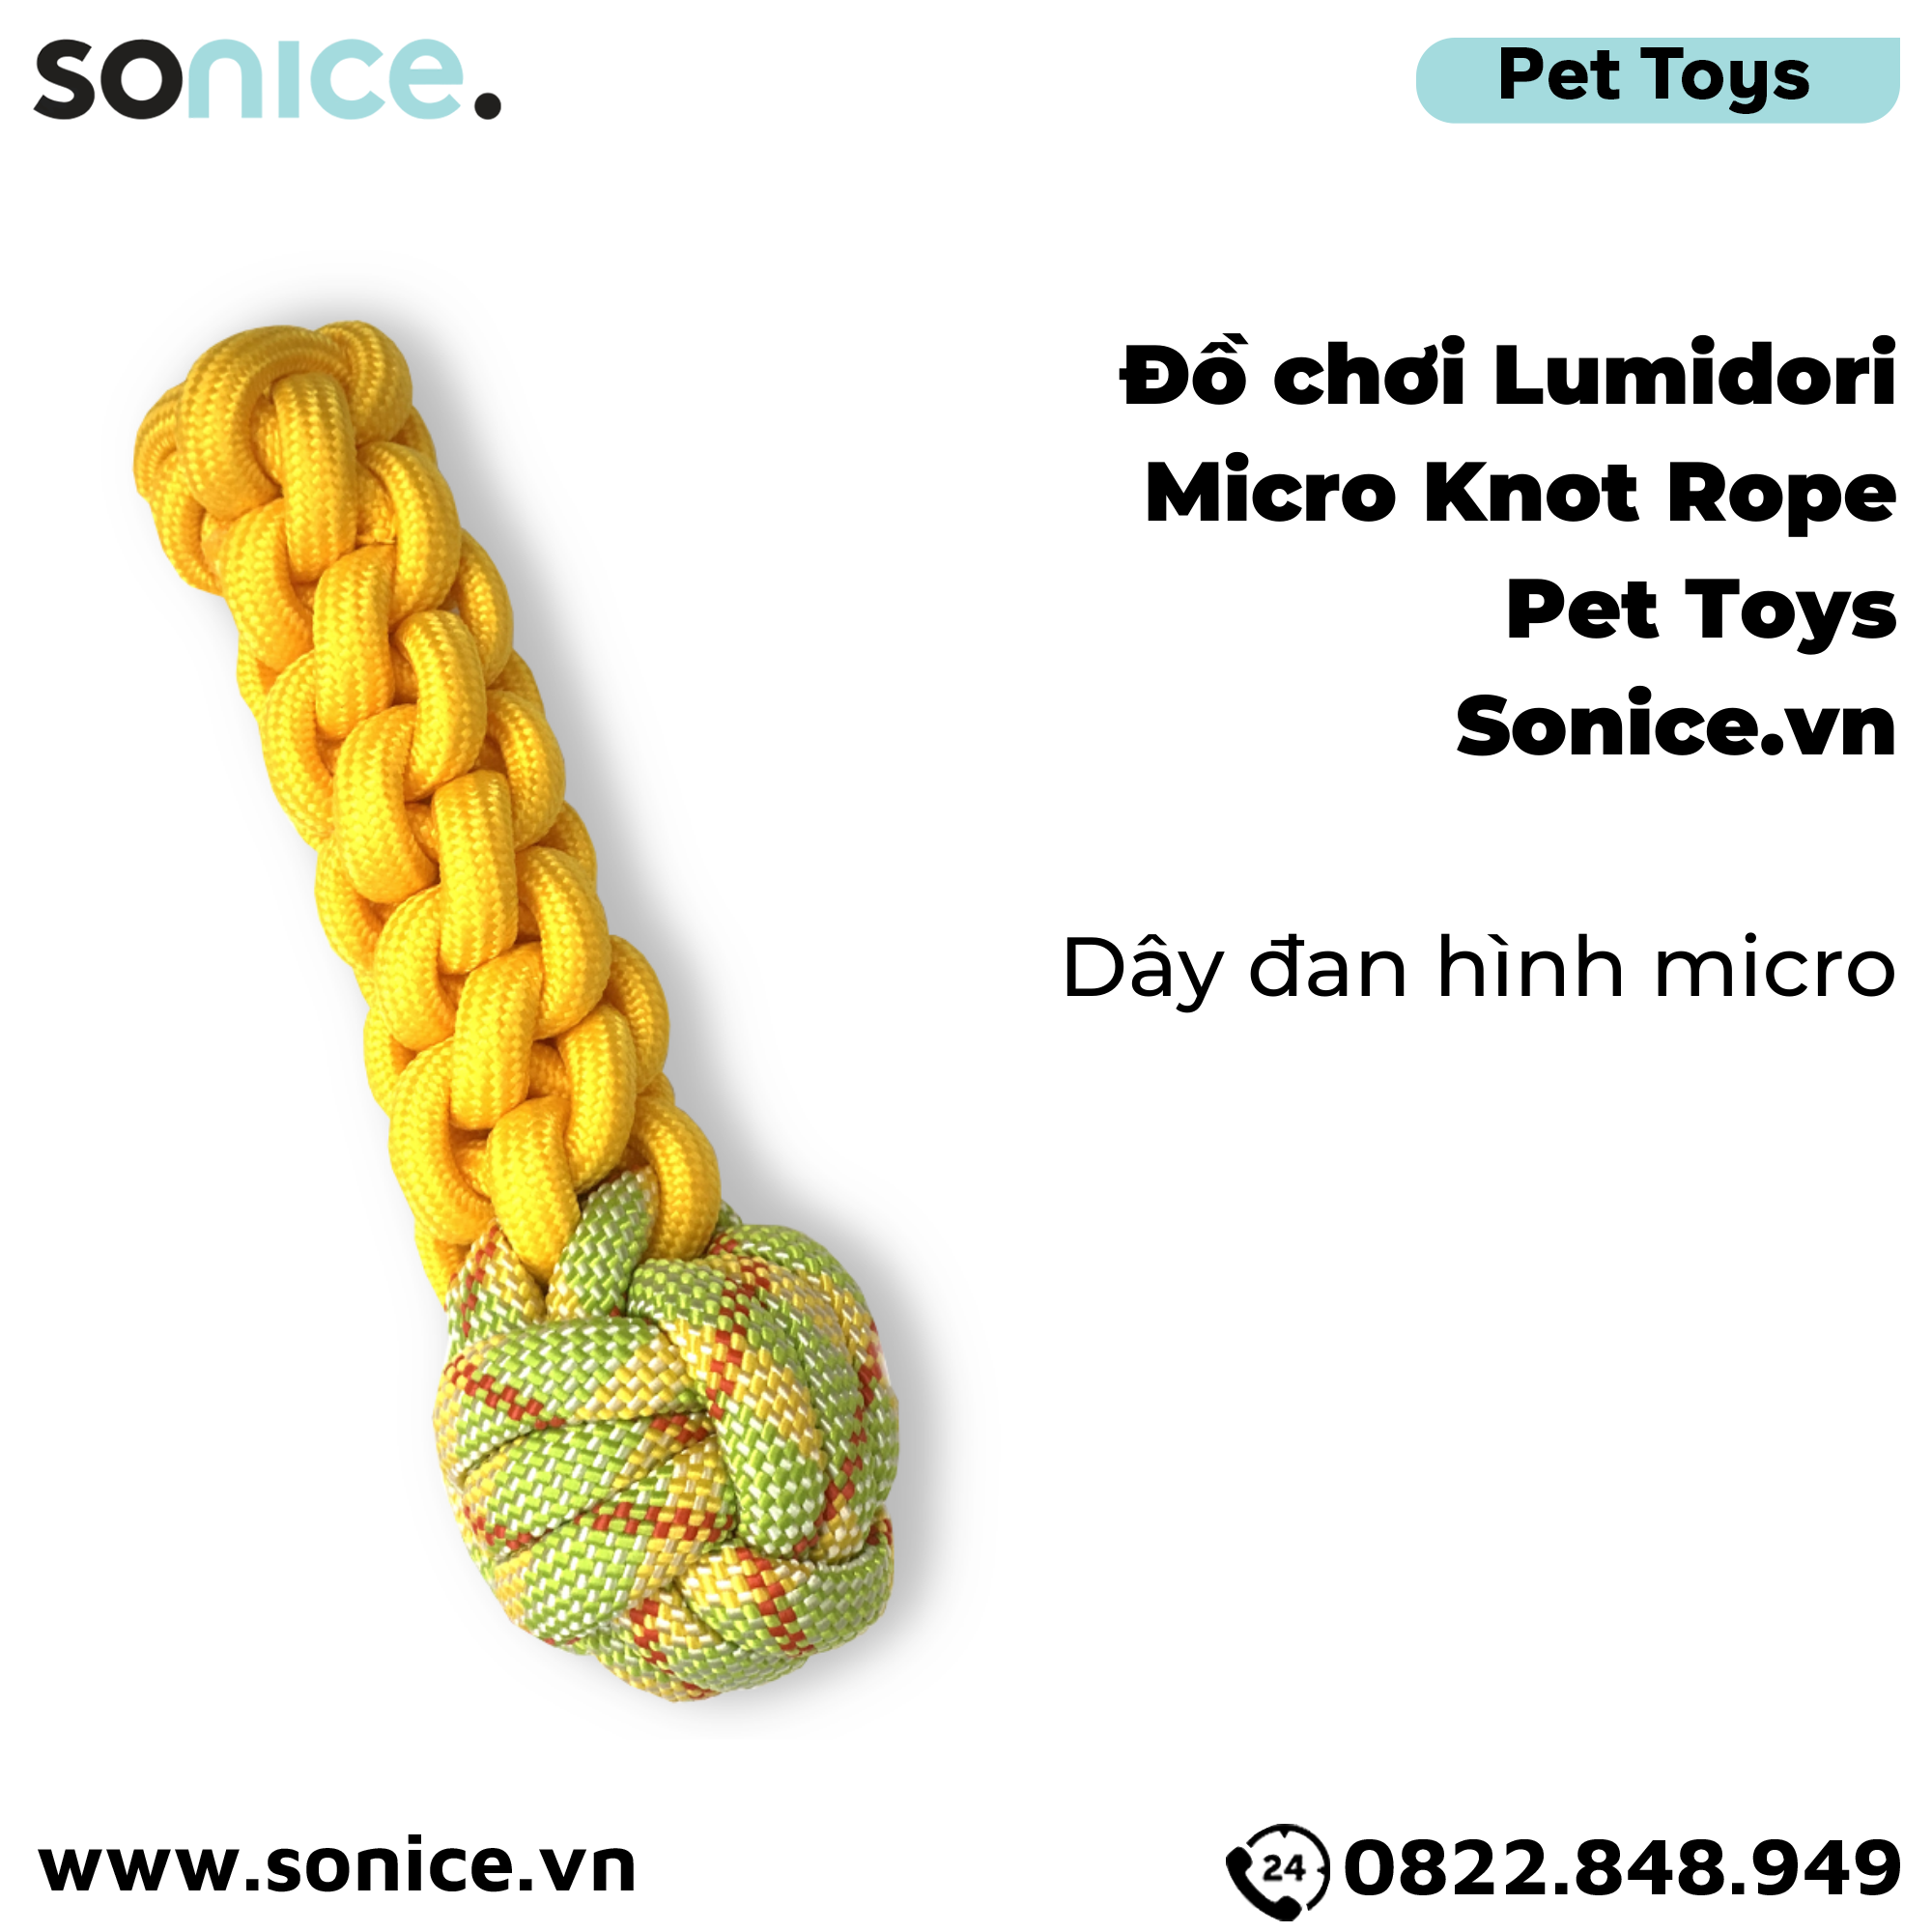  Đồ chơi Lumidori Micro Knot Rope Toys - Dây đan hình micro SONICE. 